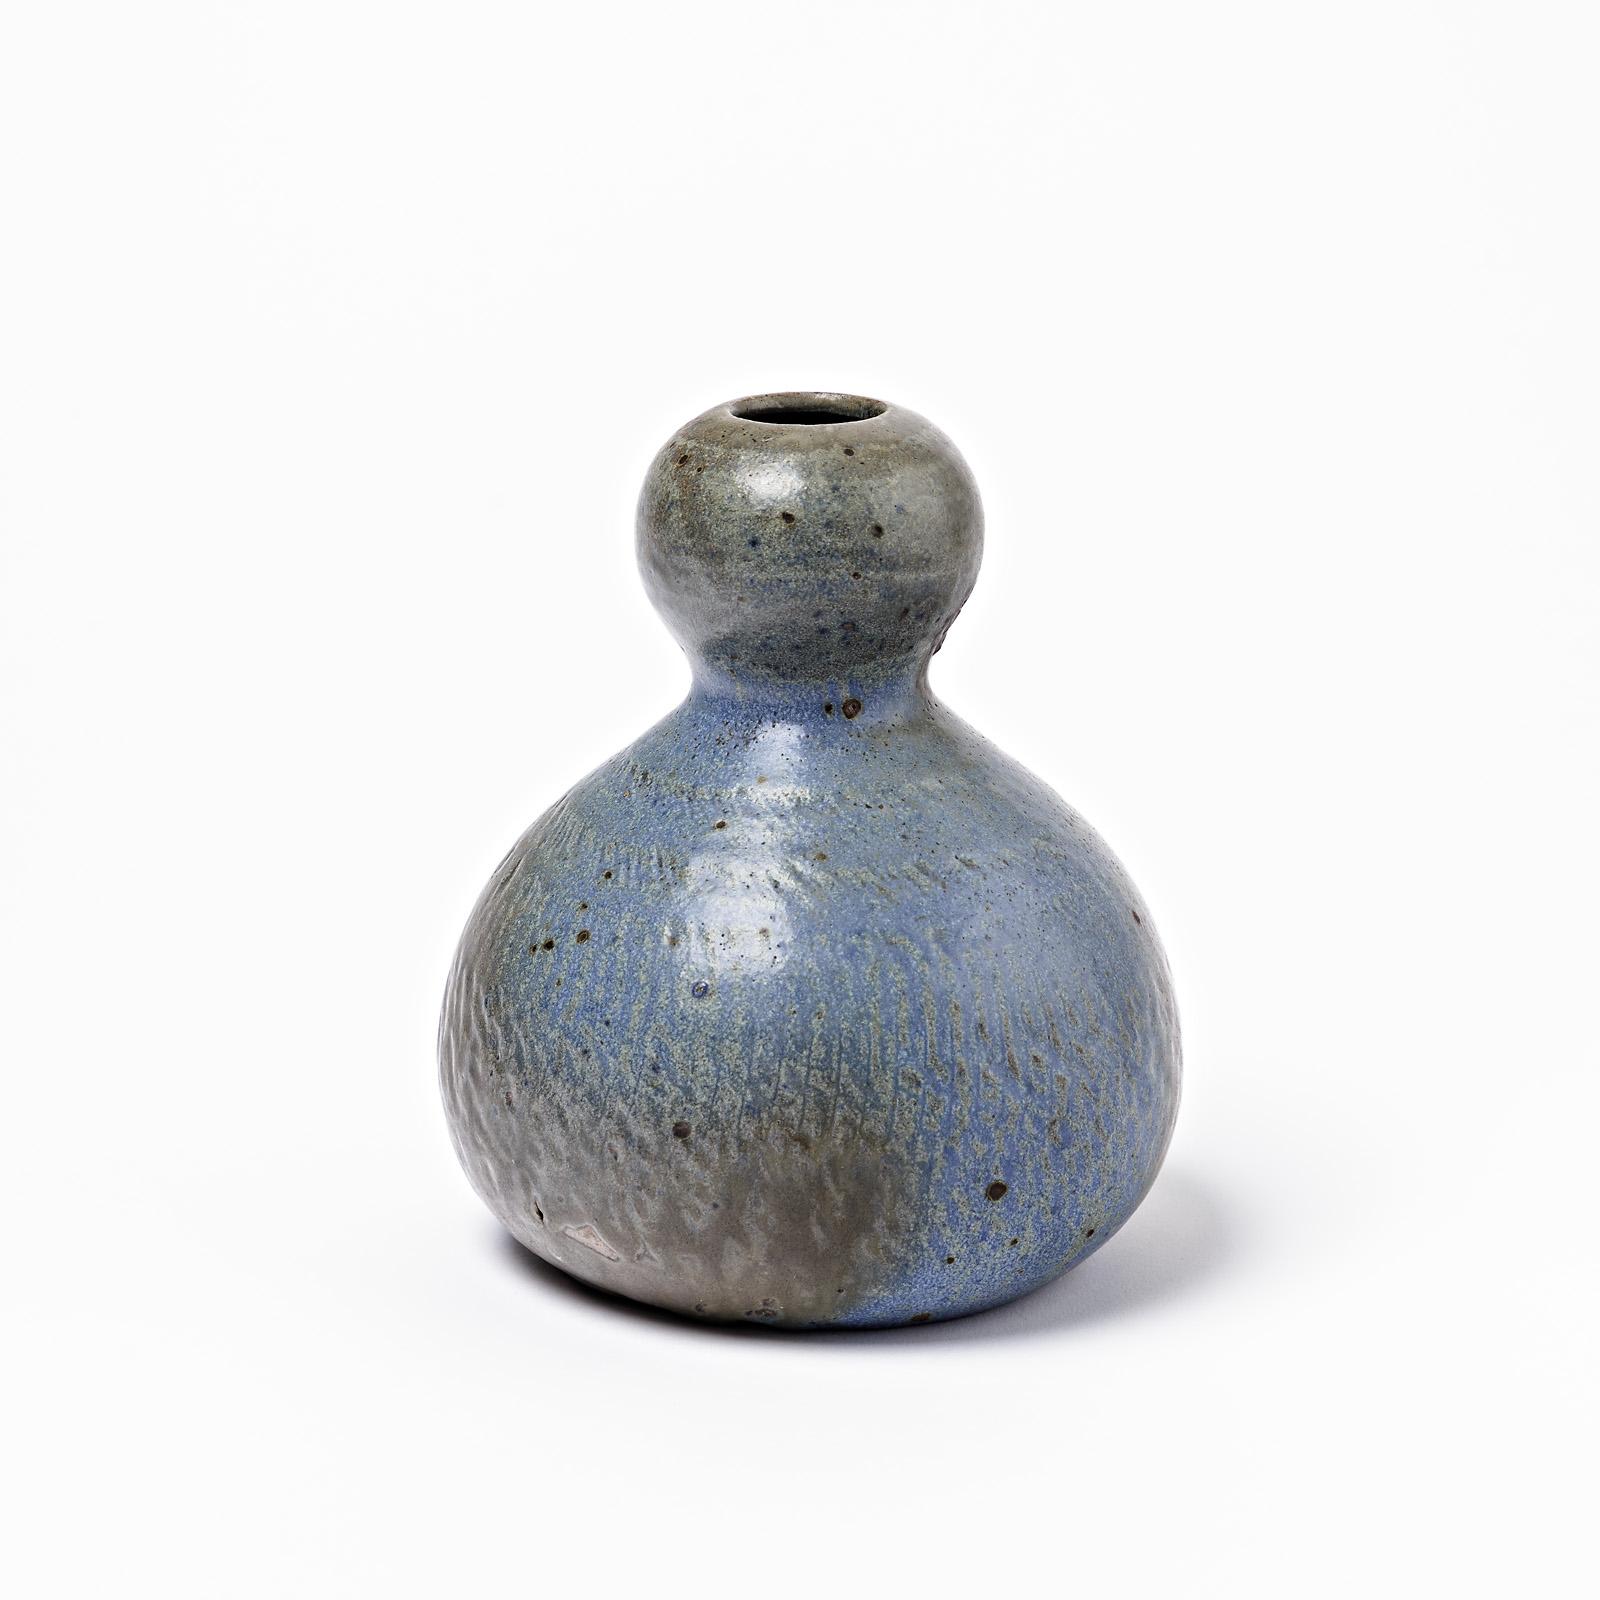 Un vase en céramique avec des glaçures bleues et brunes décorées par Théo Perrot.
Conditions d'origine parfaites.
Signé sous le socle 